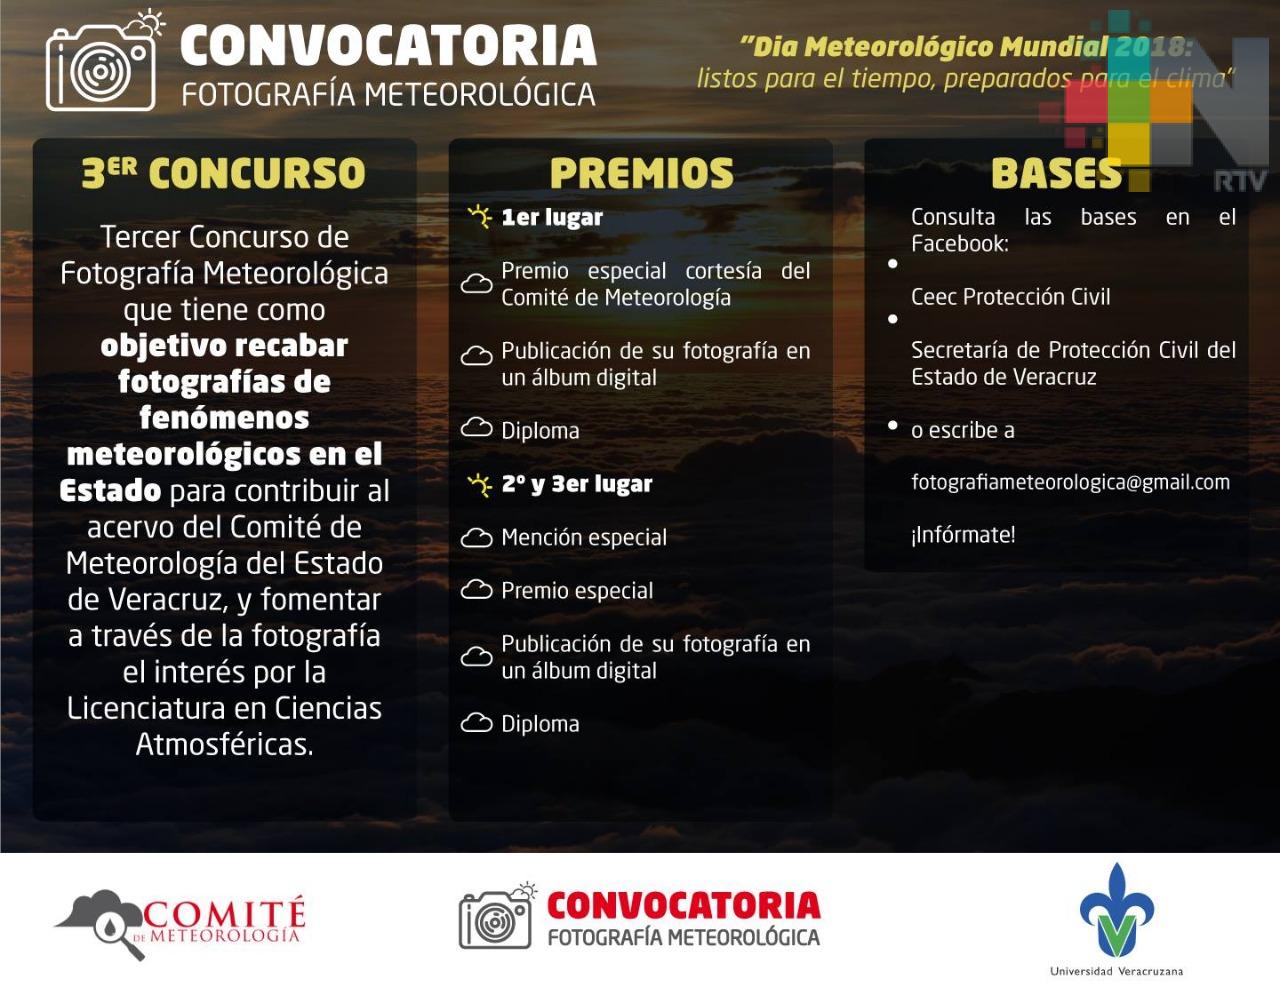 Comité de Meteorología de Veracruz emite convocatoria para concurso de fotografía